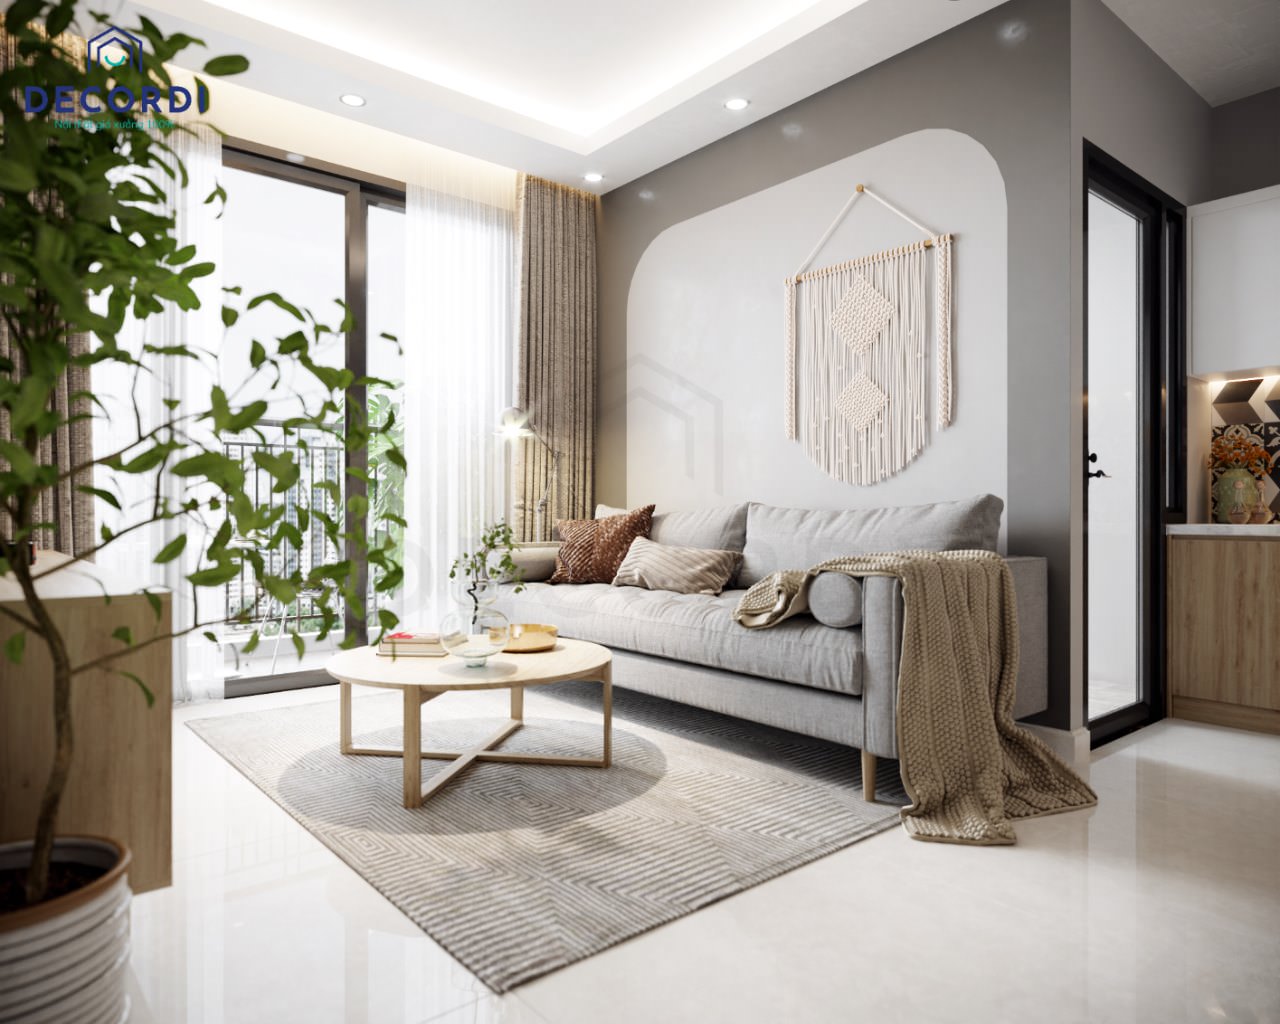 Thiết kế nội thất từng không gian cho chung cư 3 phòng ngủ thêm sang trọng và tiện nghi